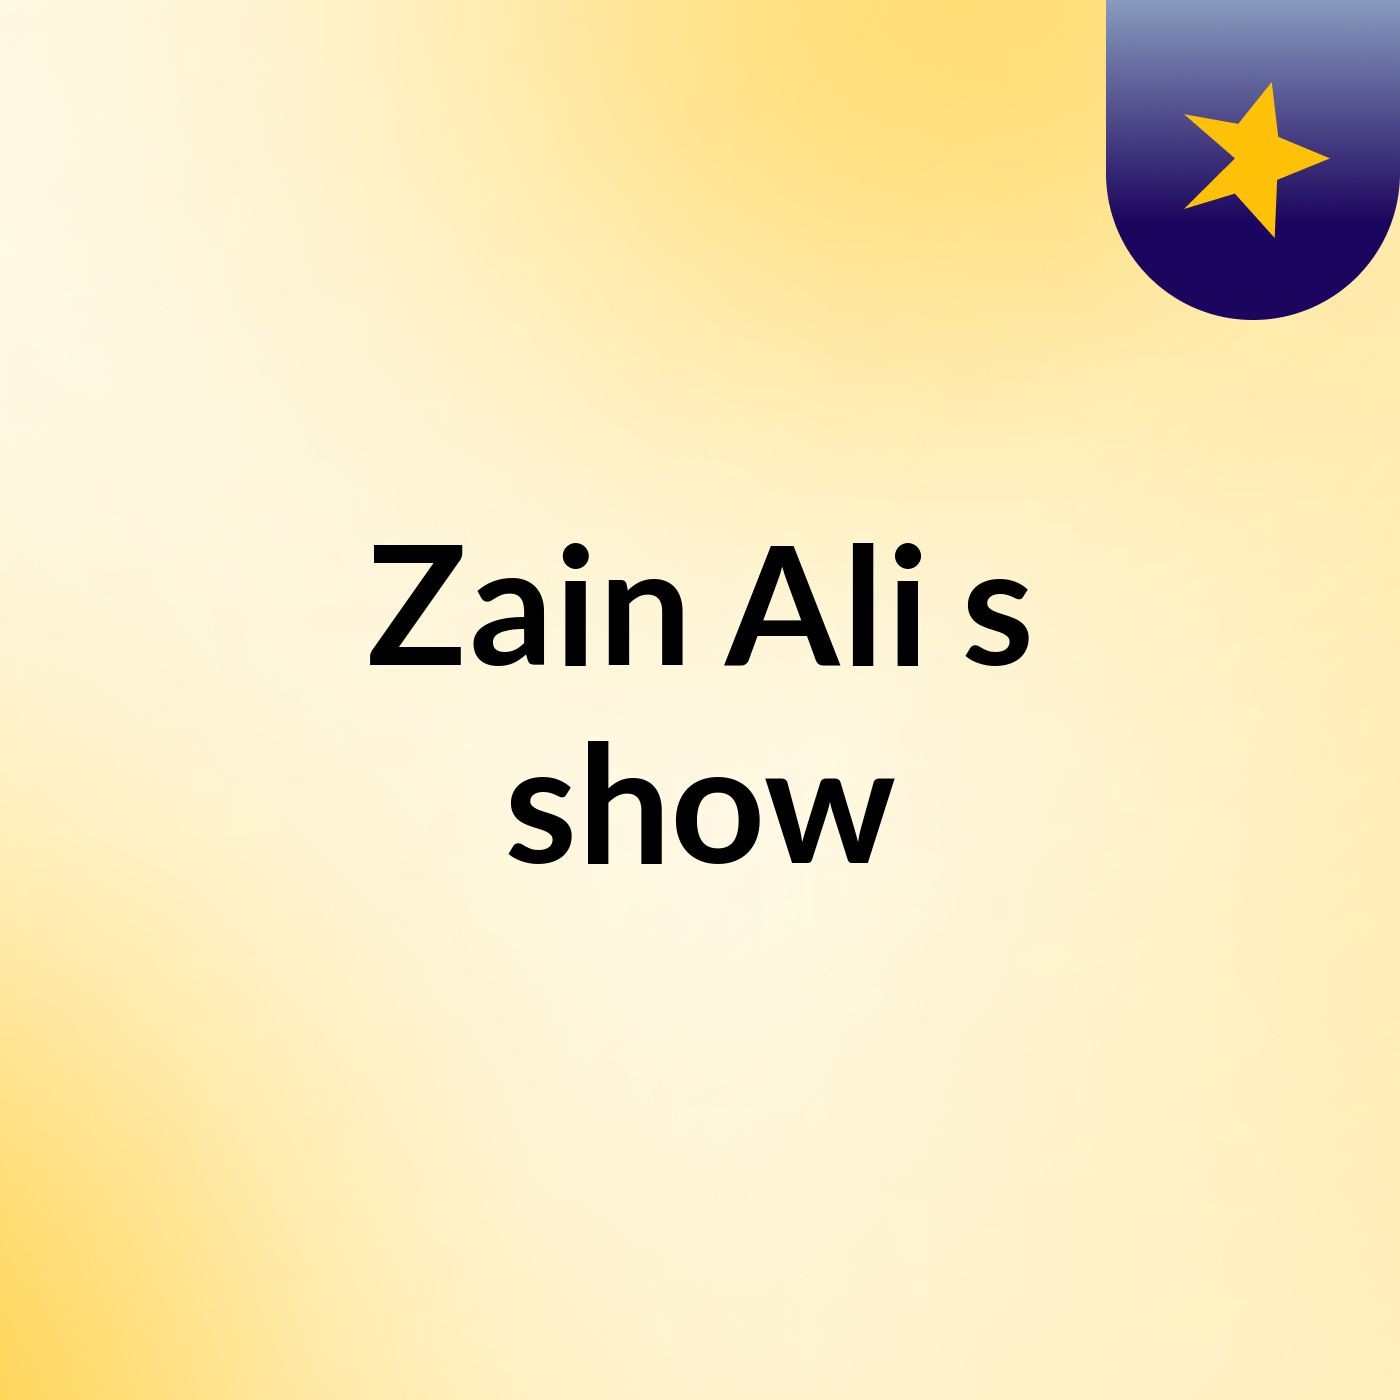 Zain Ali's show